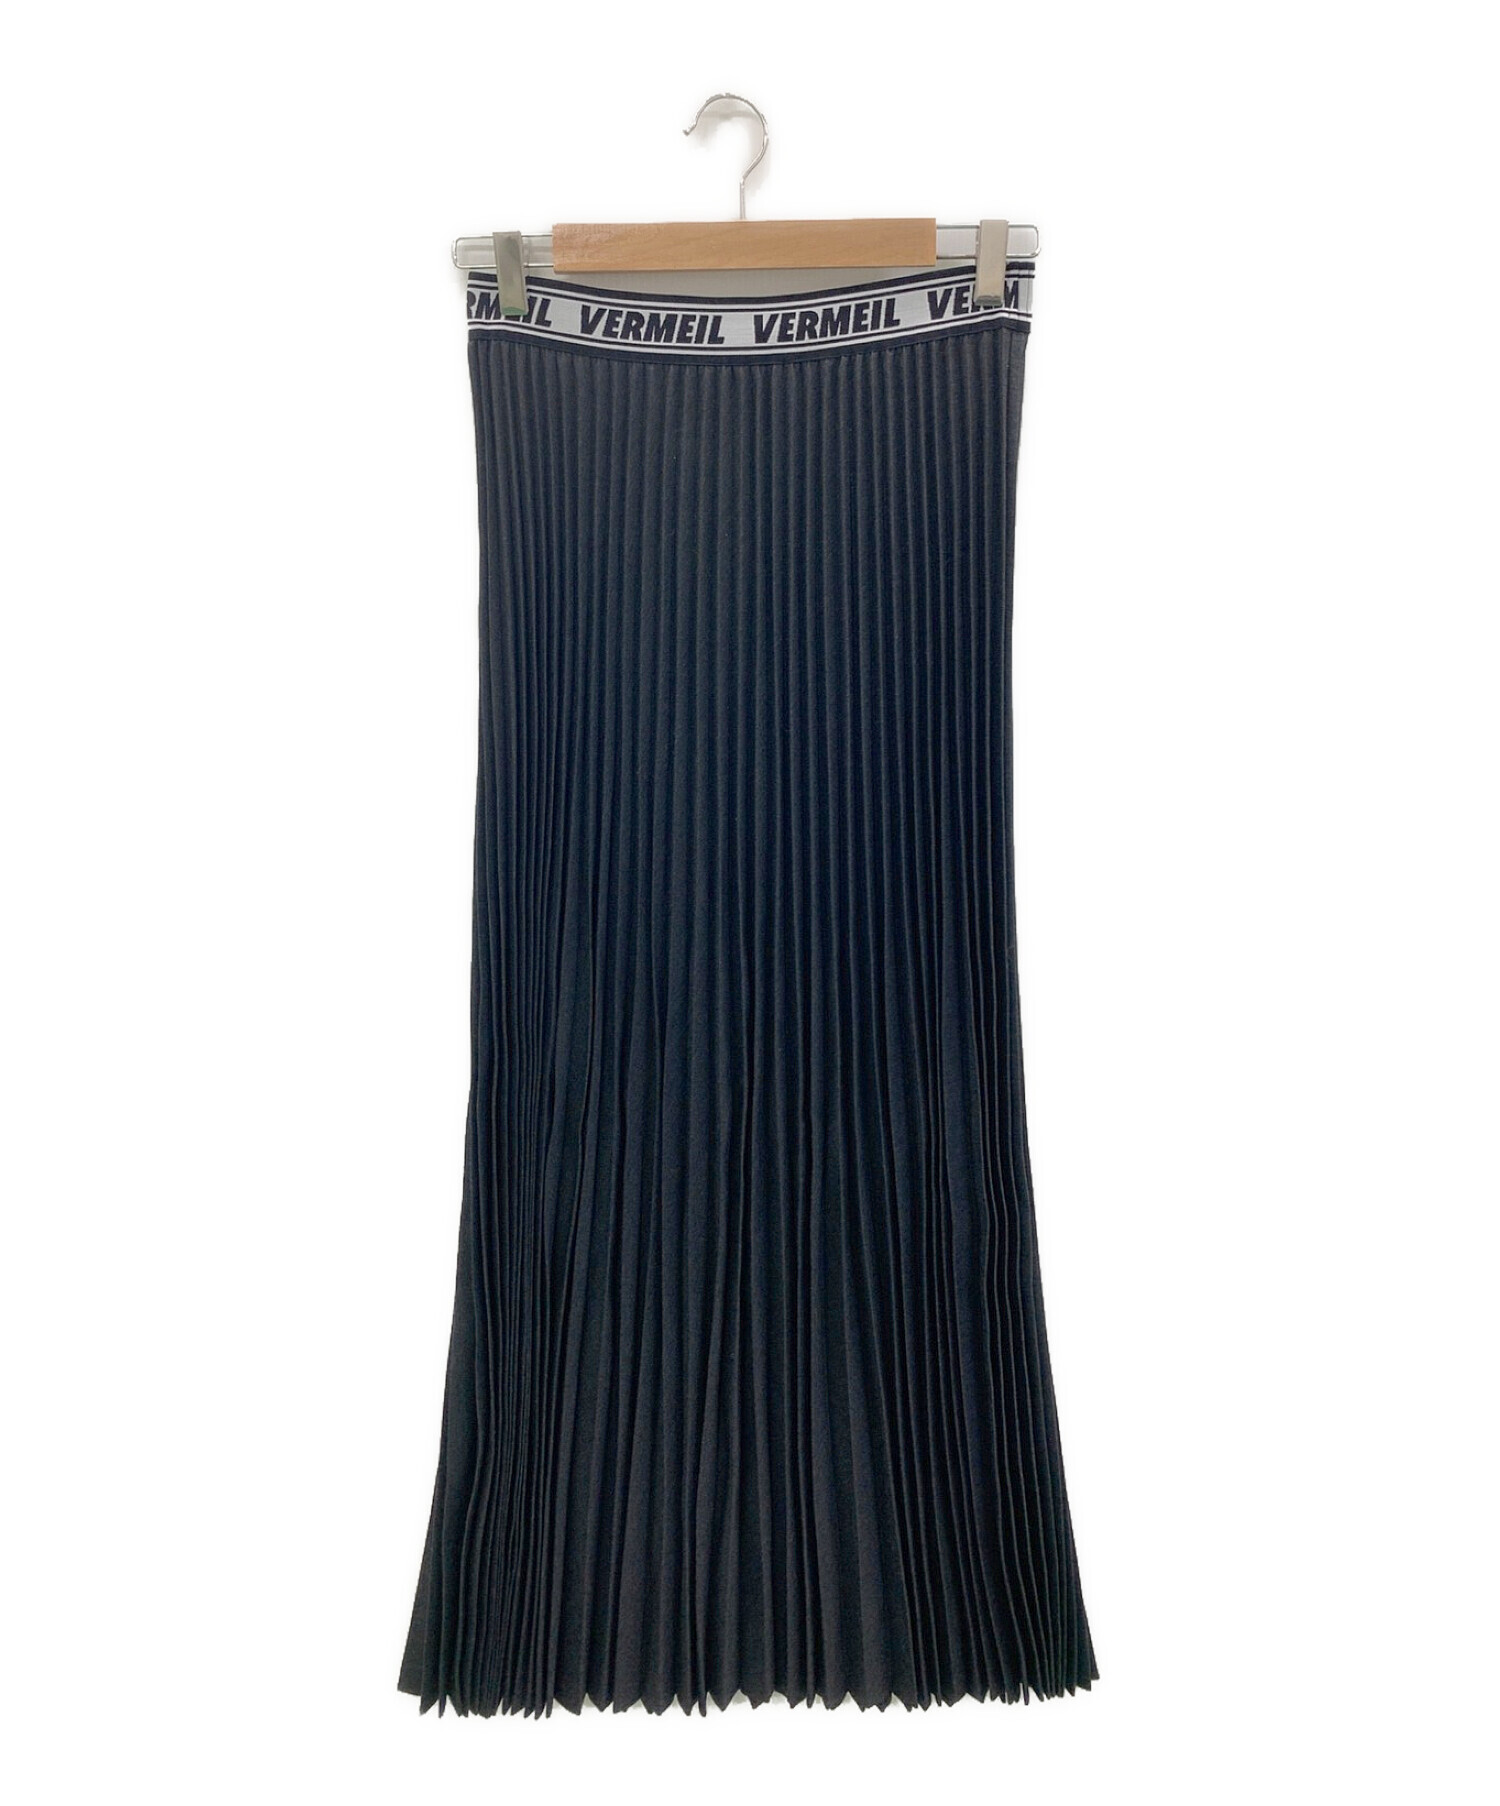 VERMEIL par iena (ヴェルメイユ パー イエナ) ロゴゴムプリーツスカート ブラック サイズ:38